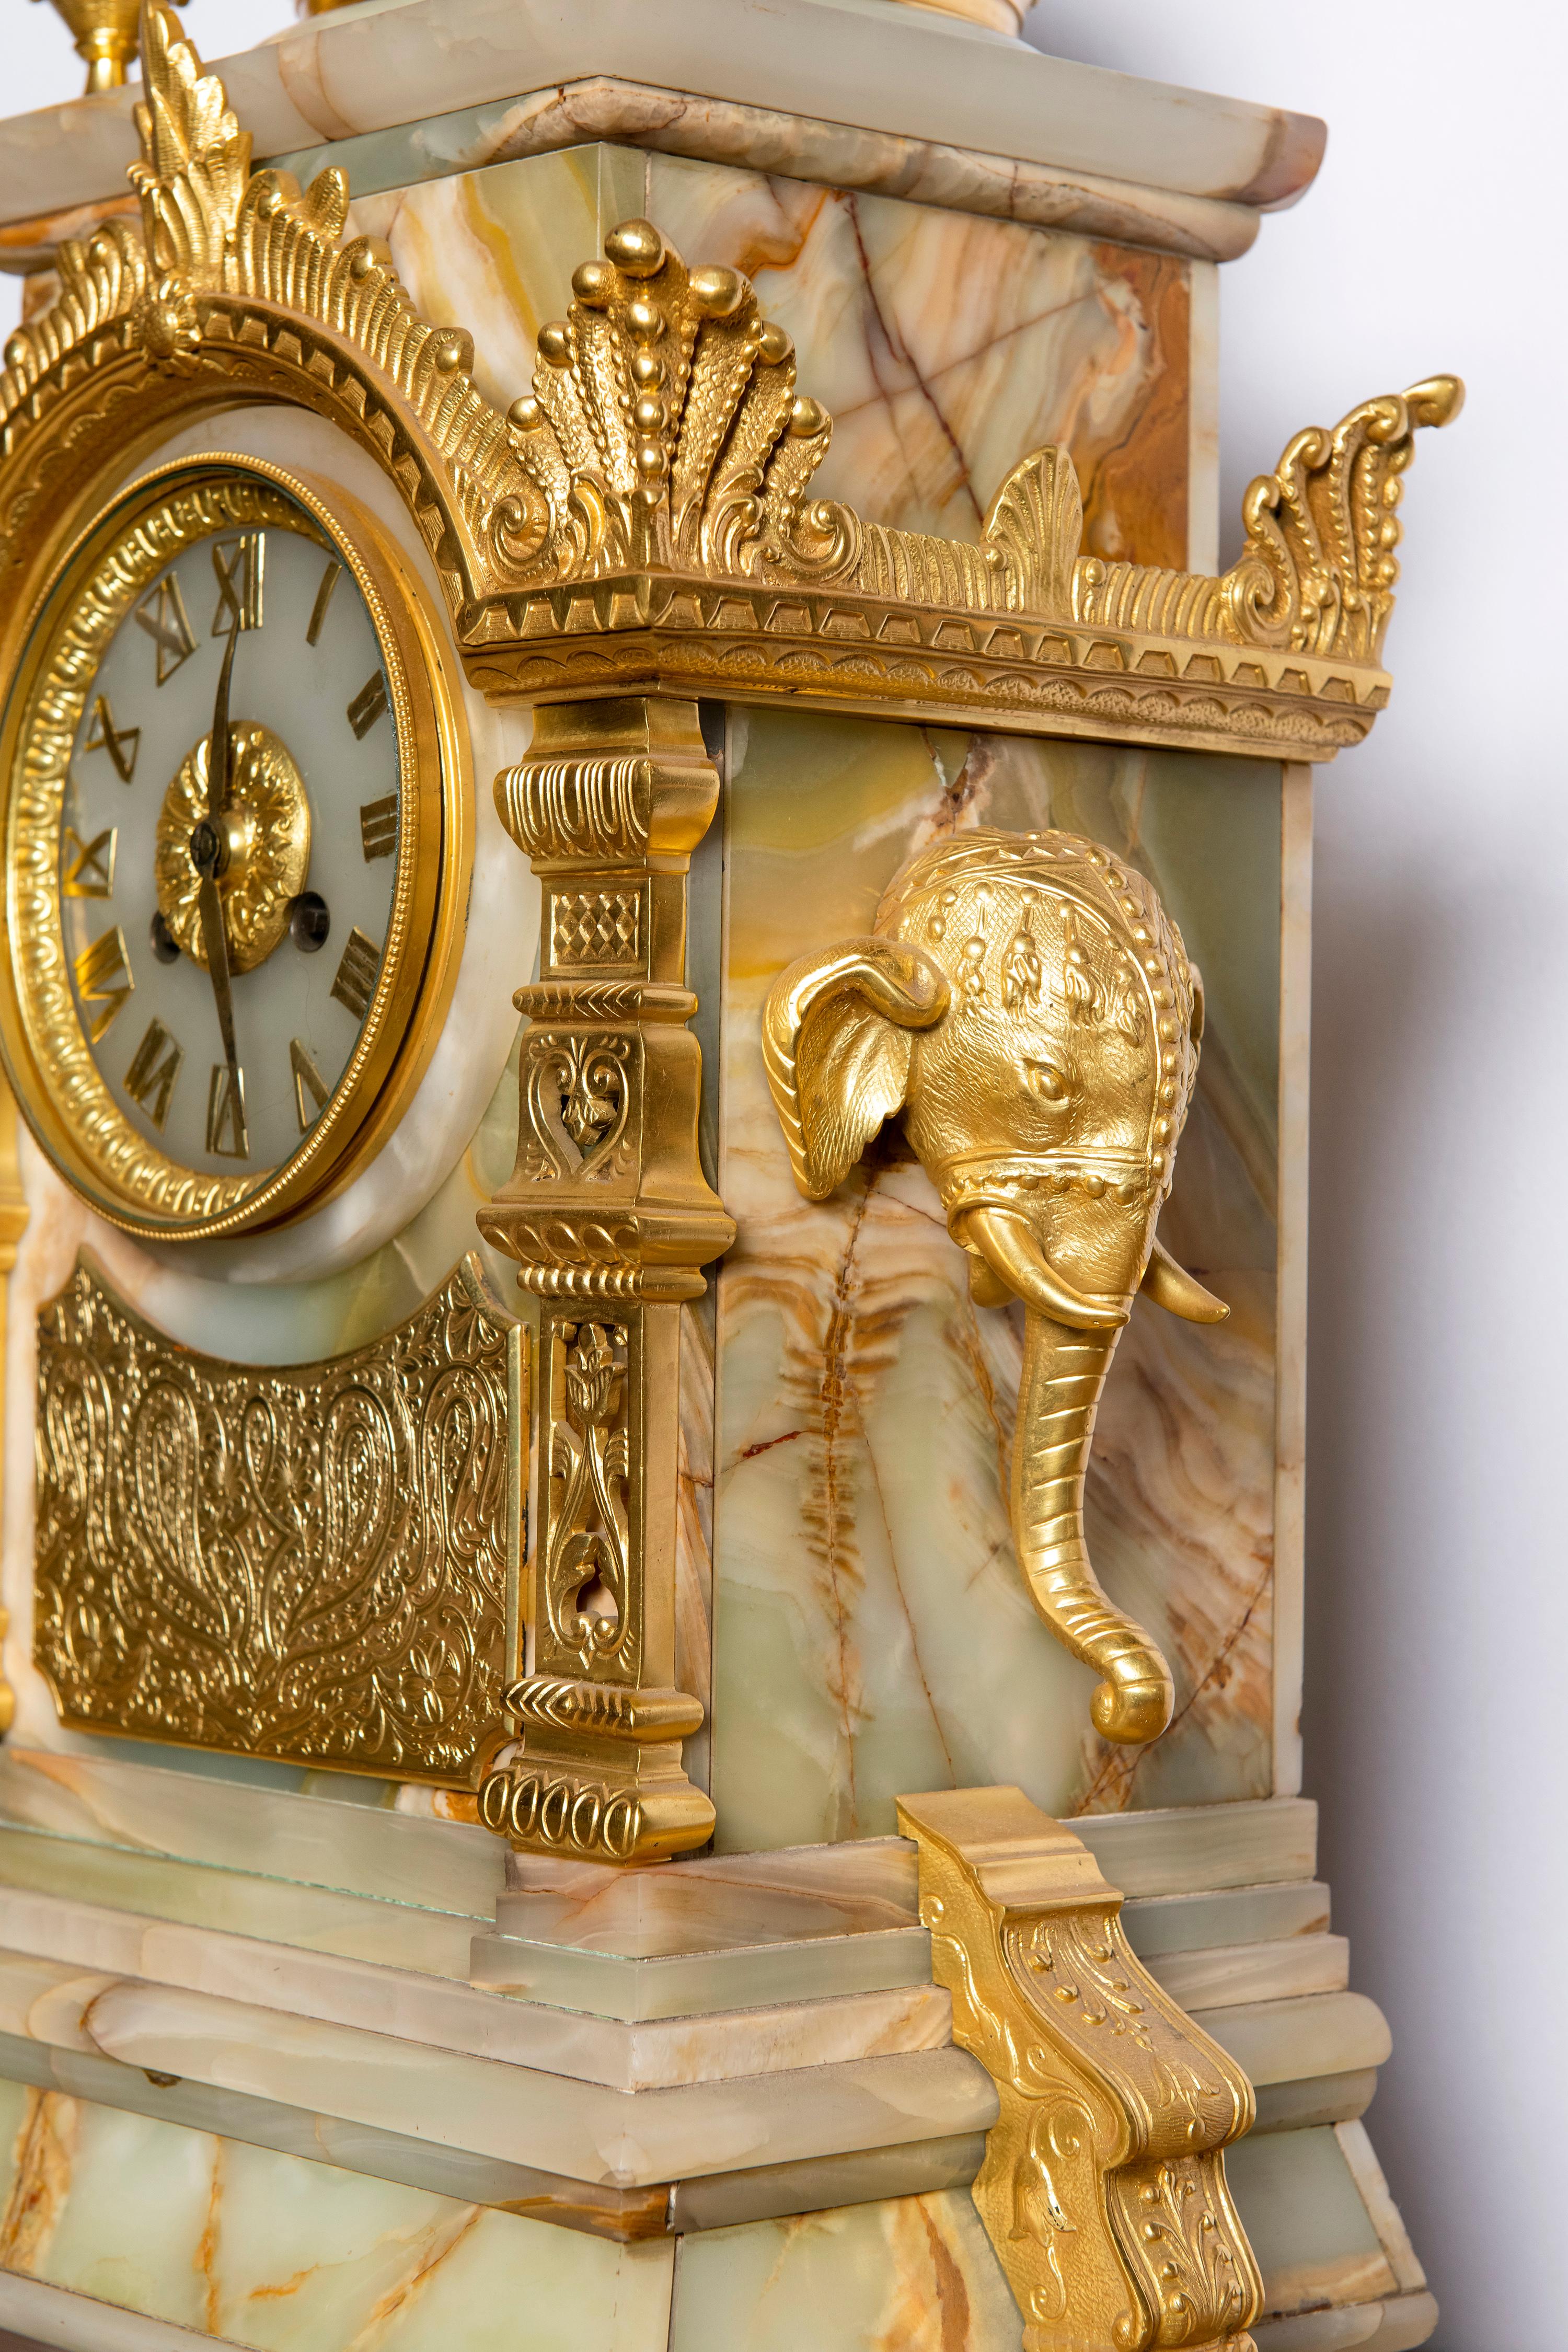 Vergoldete Bronze und Onyx-Garnitur. Orientalistischer Stil, Frankreich, um 1890.
Abmessungen der Uhr: 60 cm Höhe, 20 cm Tiefe, 37 cm Breite.

 